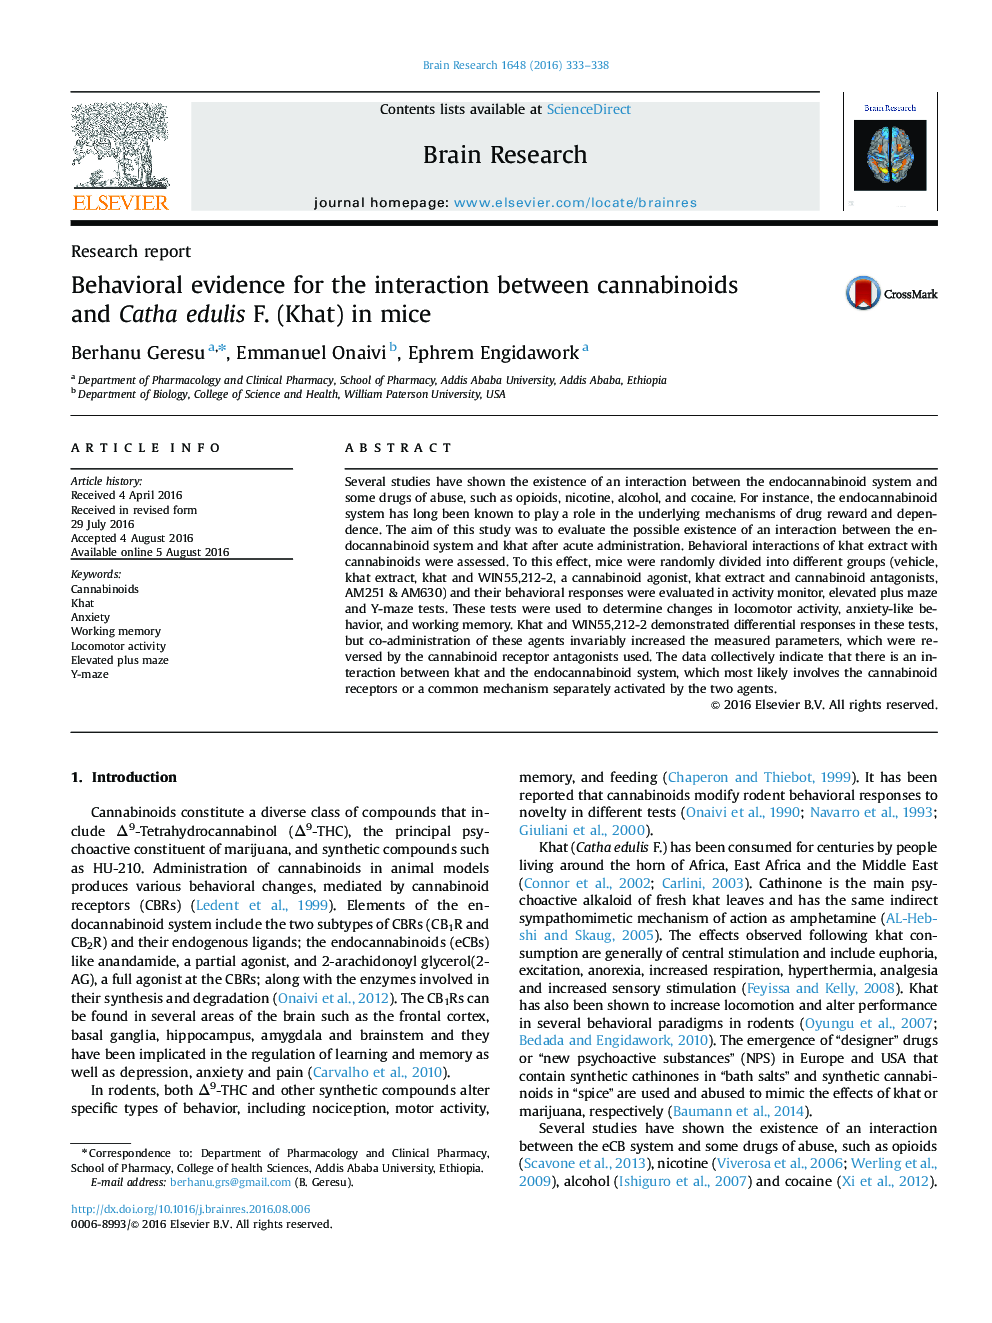 گزارش تحقیقاتی شواهد رفتاری برای تعامل بین کانابینوئیدها و کاتا ادولیس فت (خات) در موش 